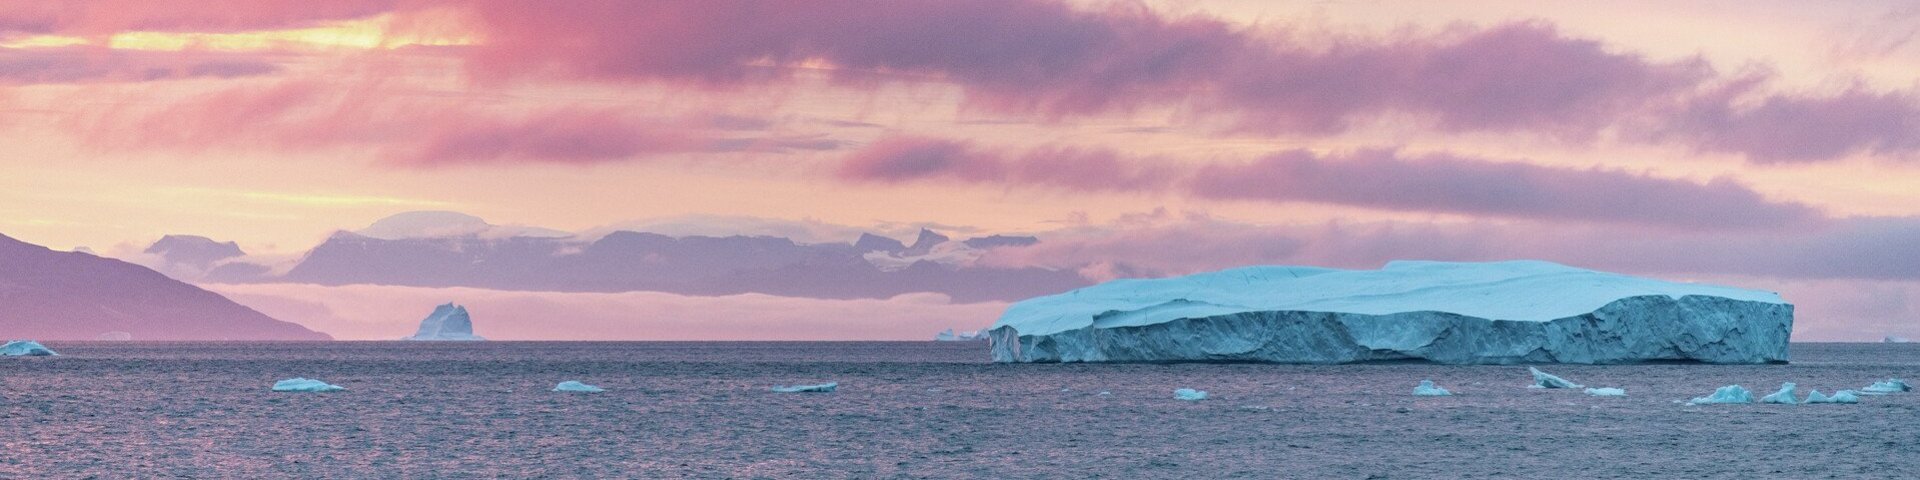 Abendstimmung in Ilulissat mit Eisberg